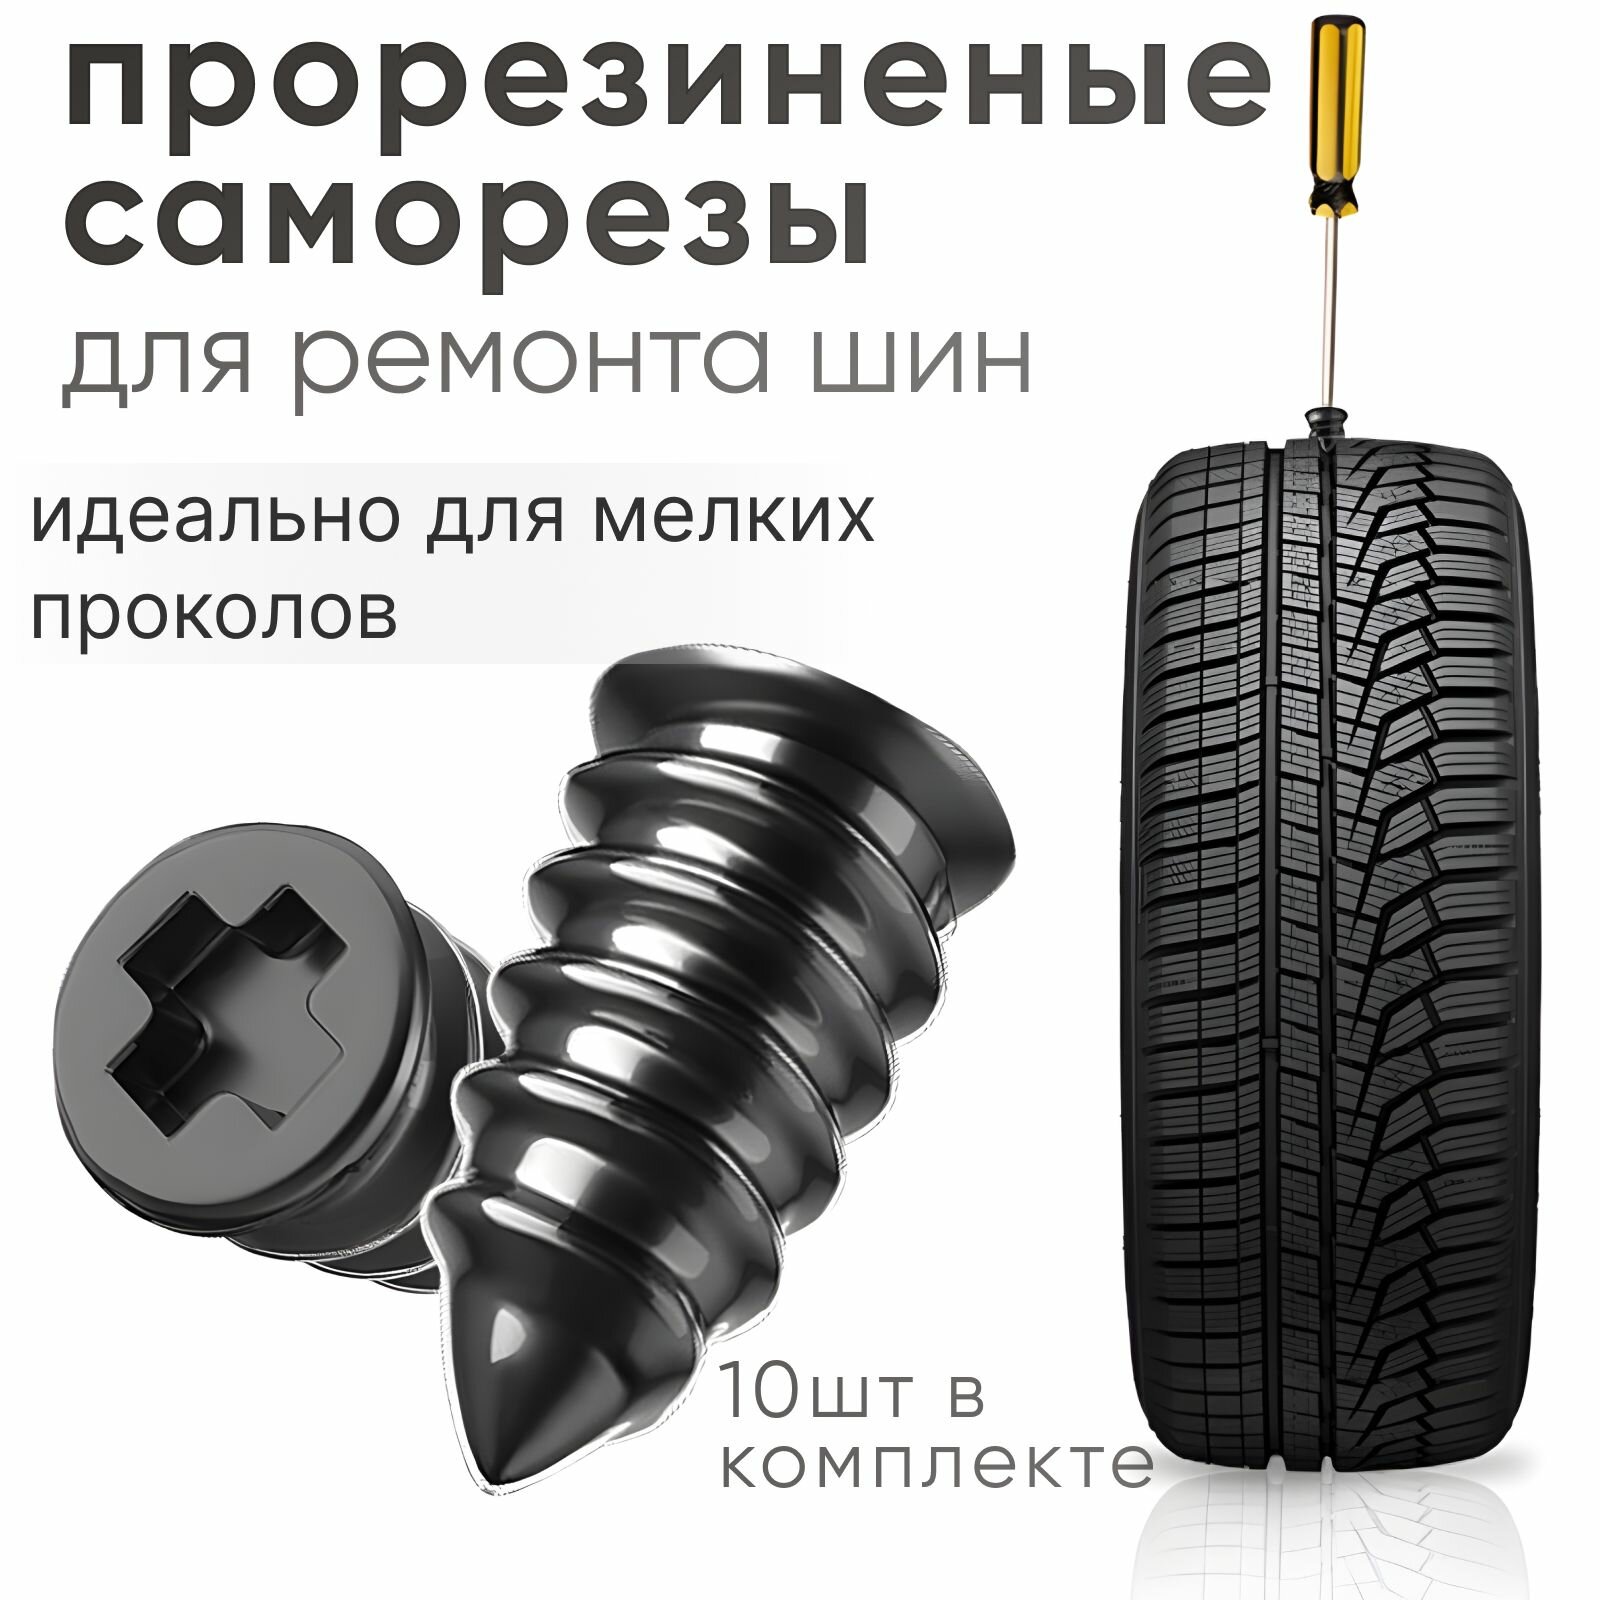 Ремкомплект для шин набор резиновых гвоздей для ремонта автомобильных и мотоциклетных шин 10шт